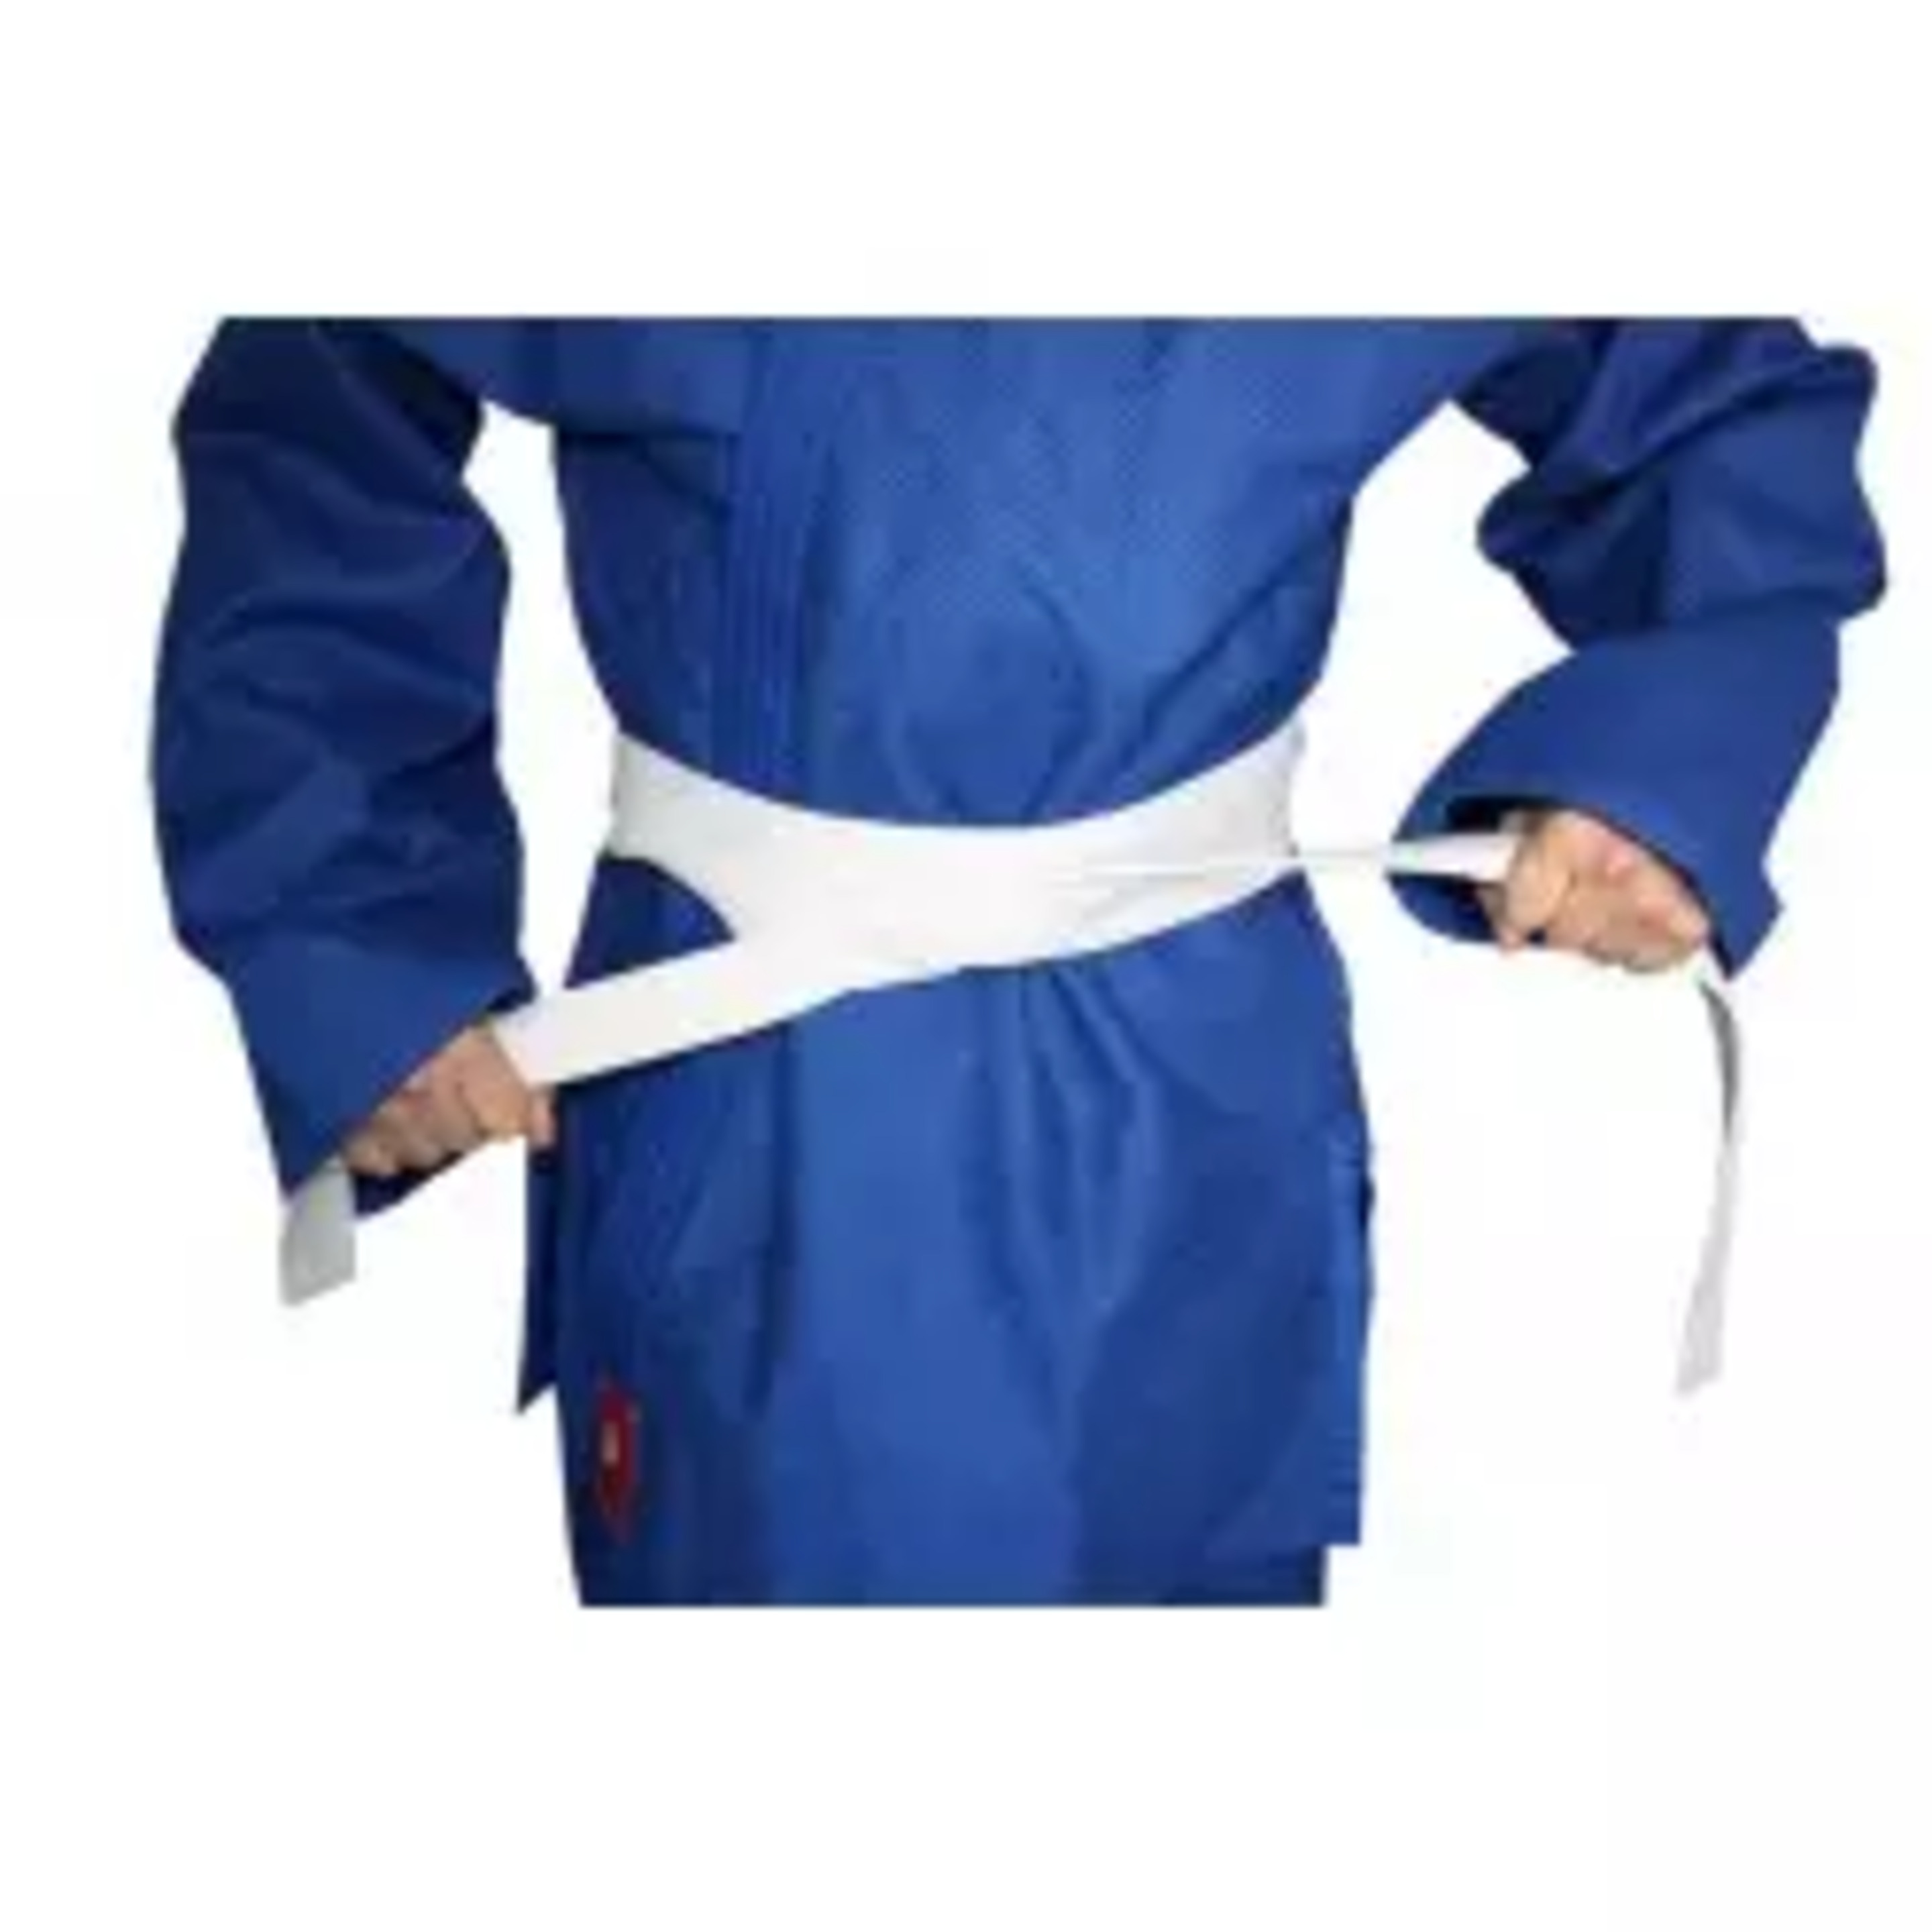 Judogi Yosihiro -kimono Judo- 100%  -incl. Cinturon Blanco   2/150cm - Blanco - Kimono Karate-  65%  - 35%  Blanco  MKP